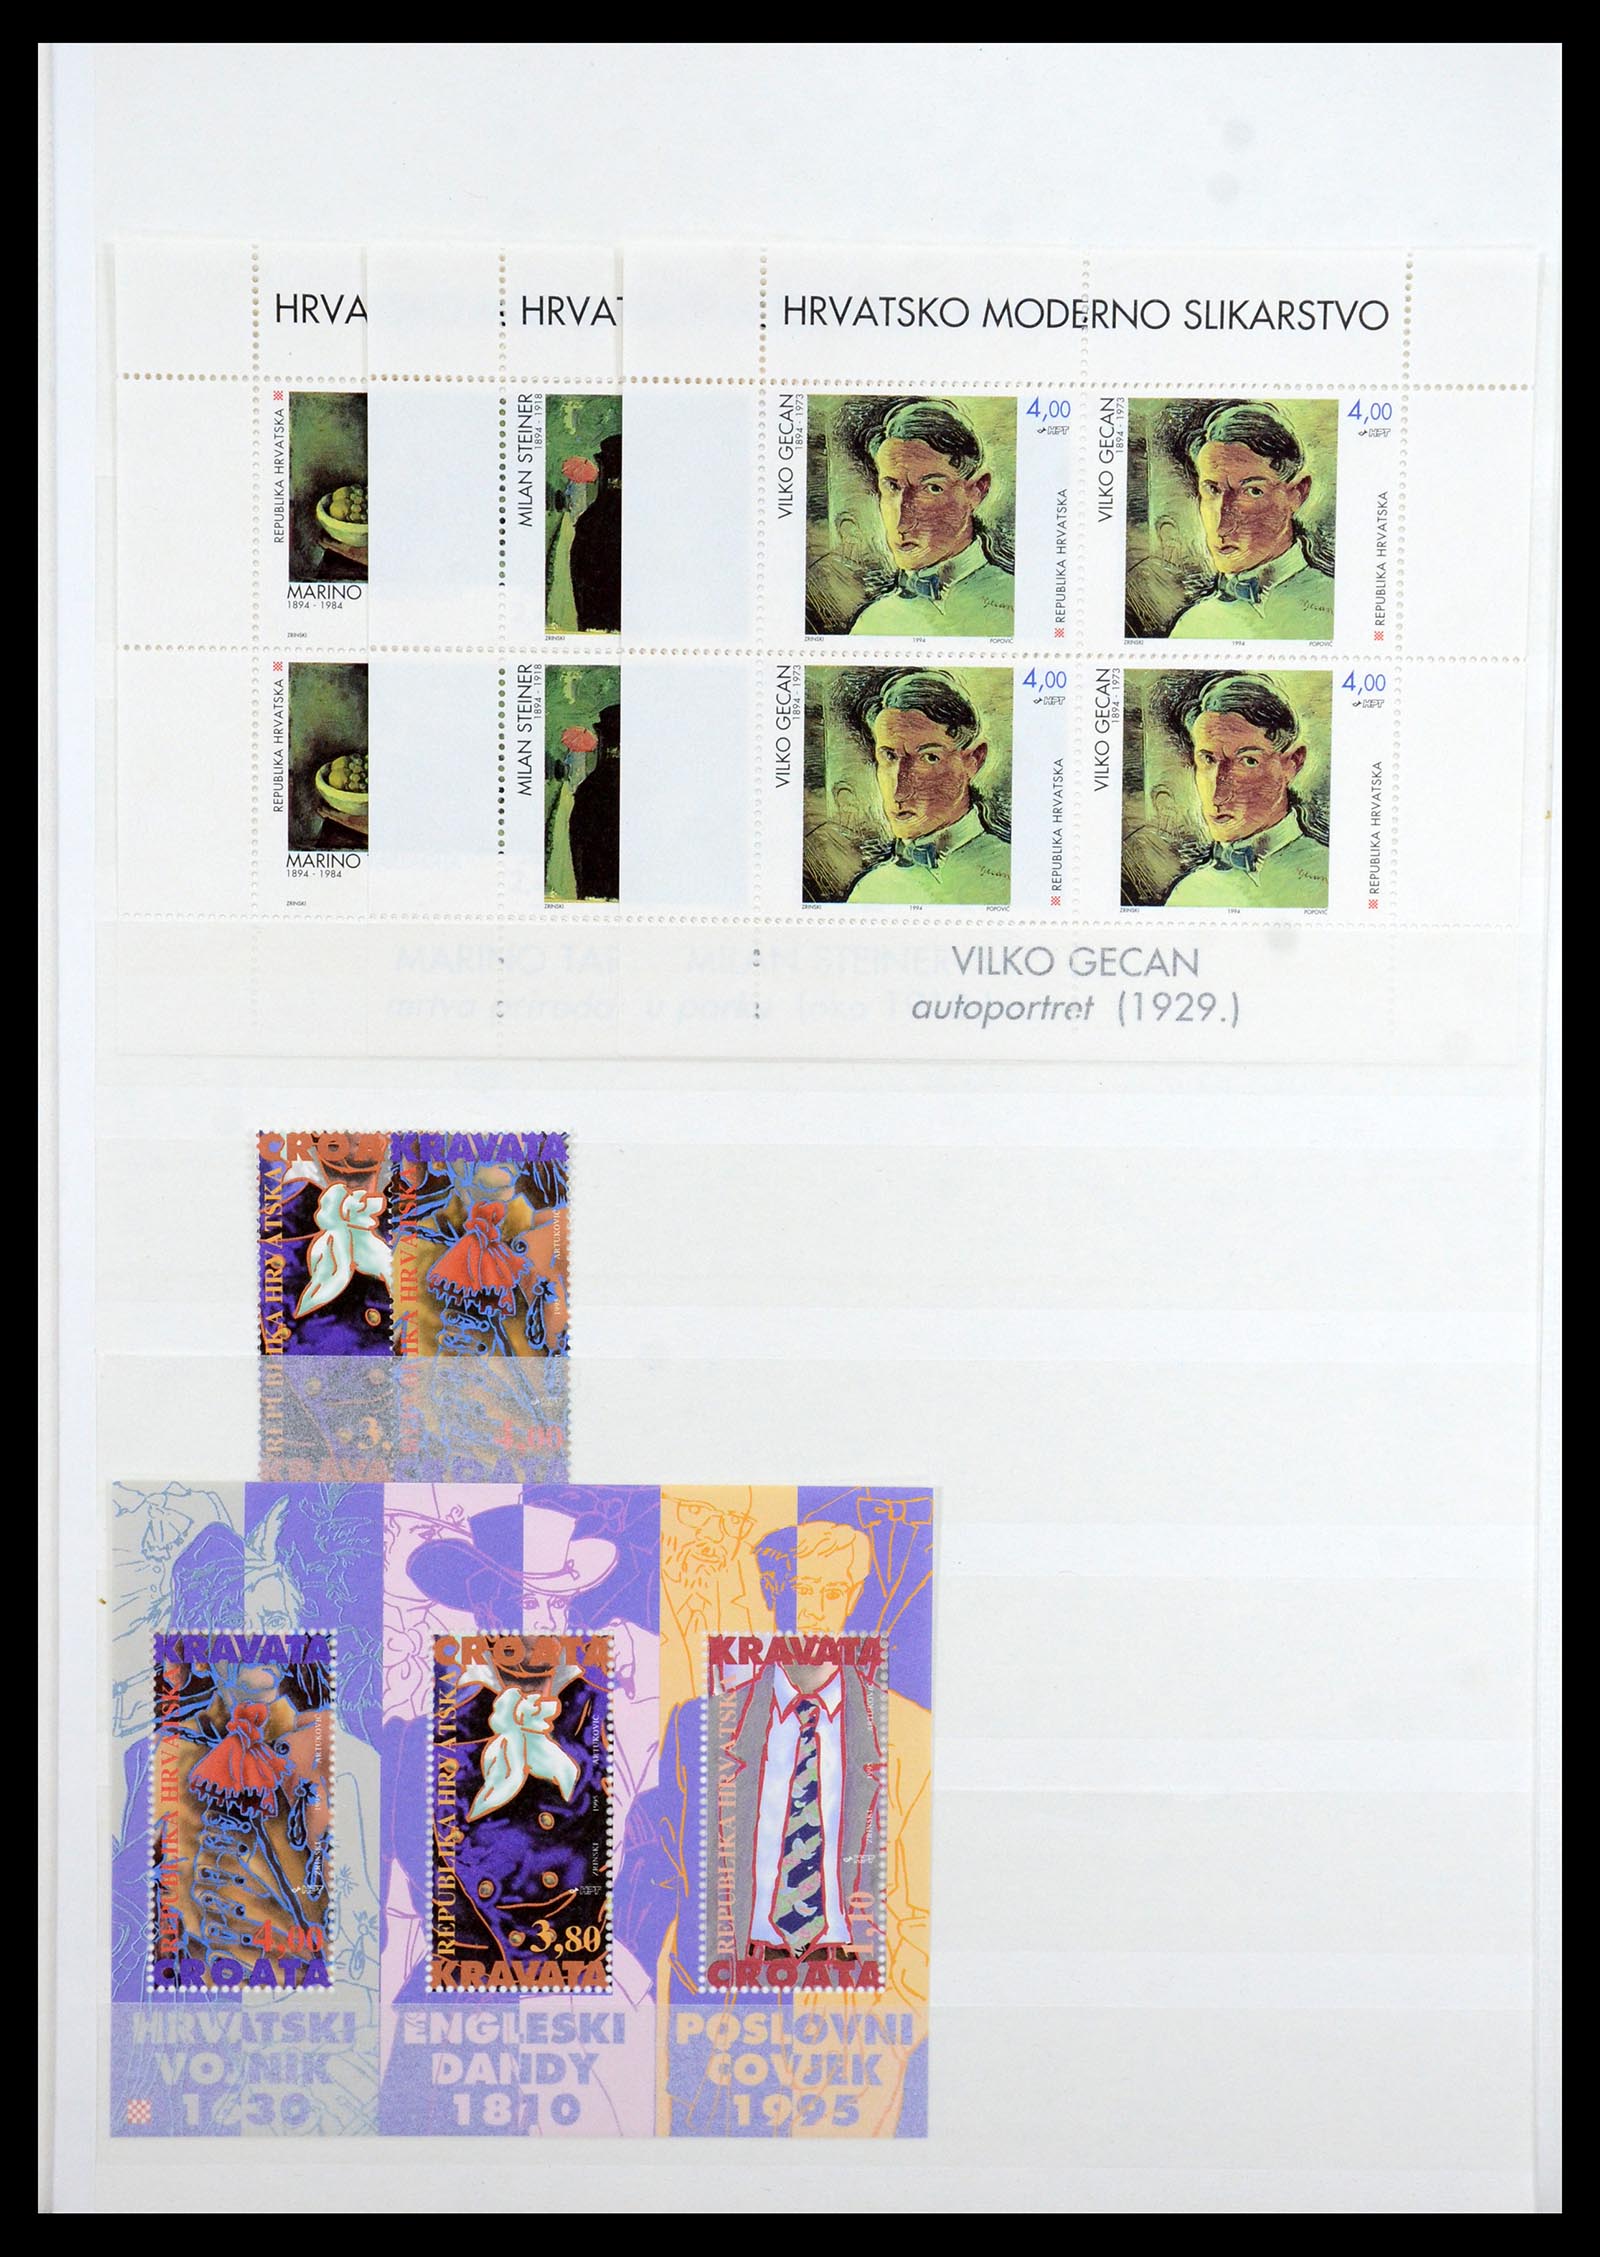 36461 042 - Stamp collection 36461 Slovenia, Croatia and Bosnia-Herzegovina MNH 1991